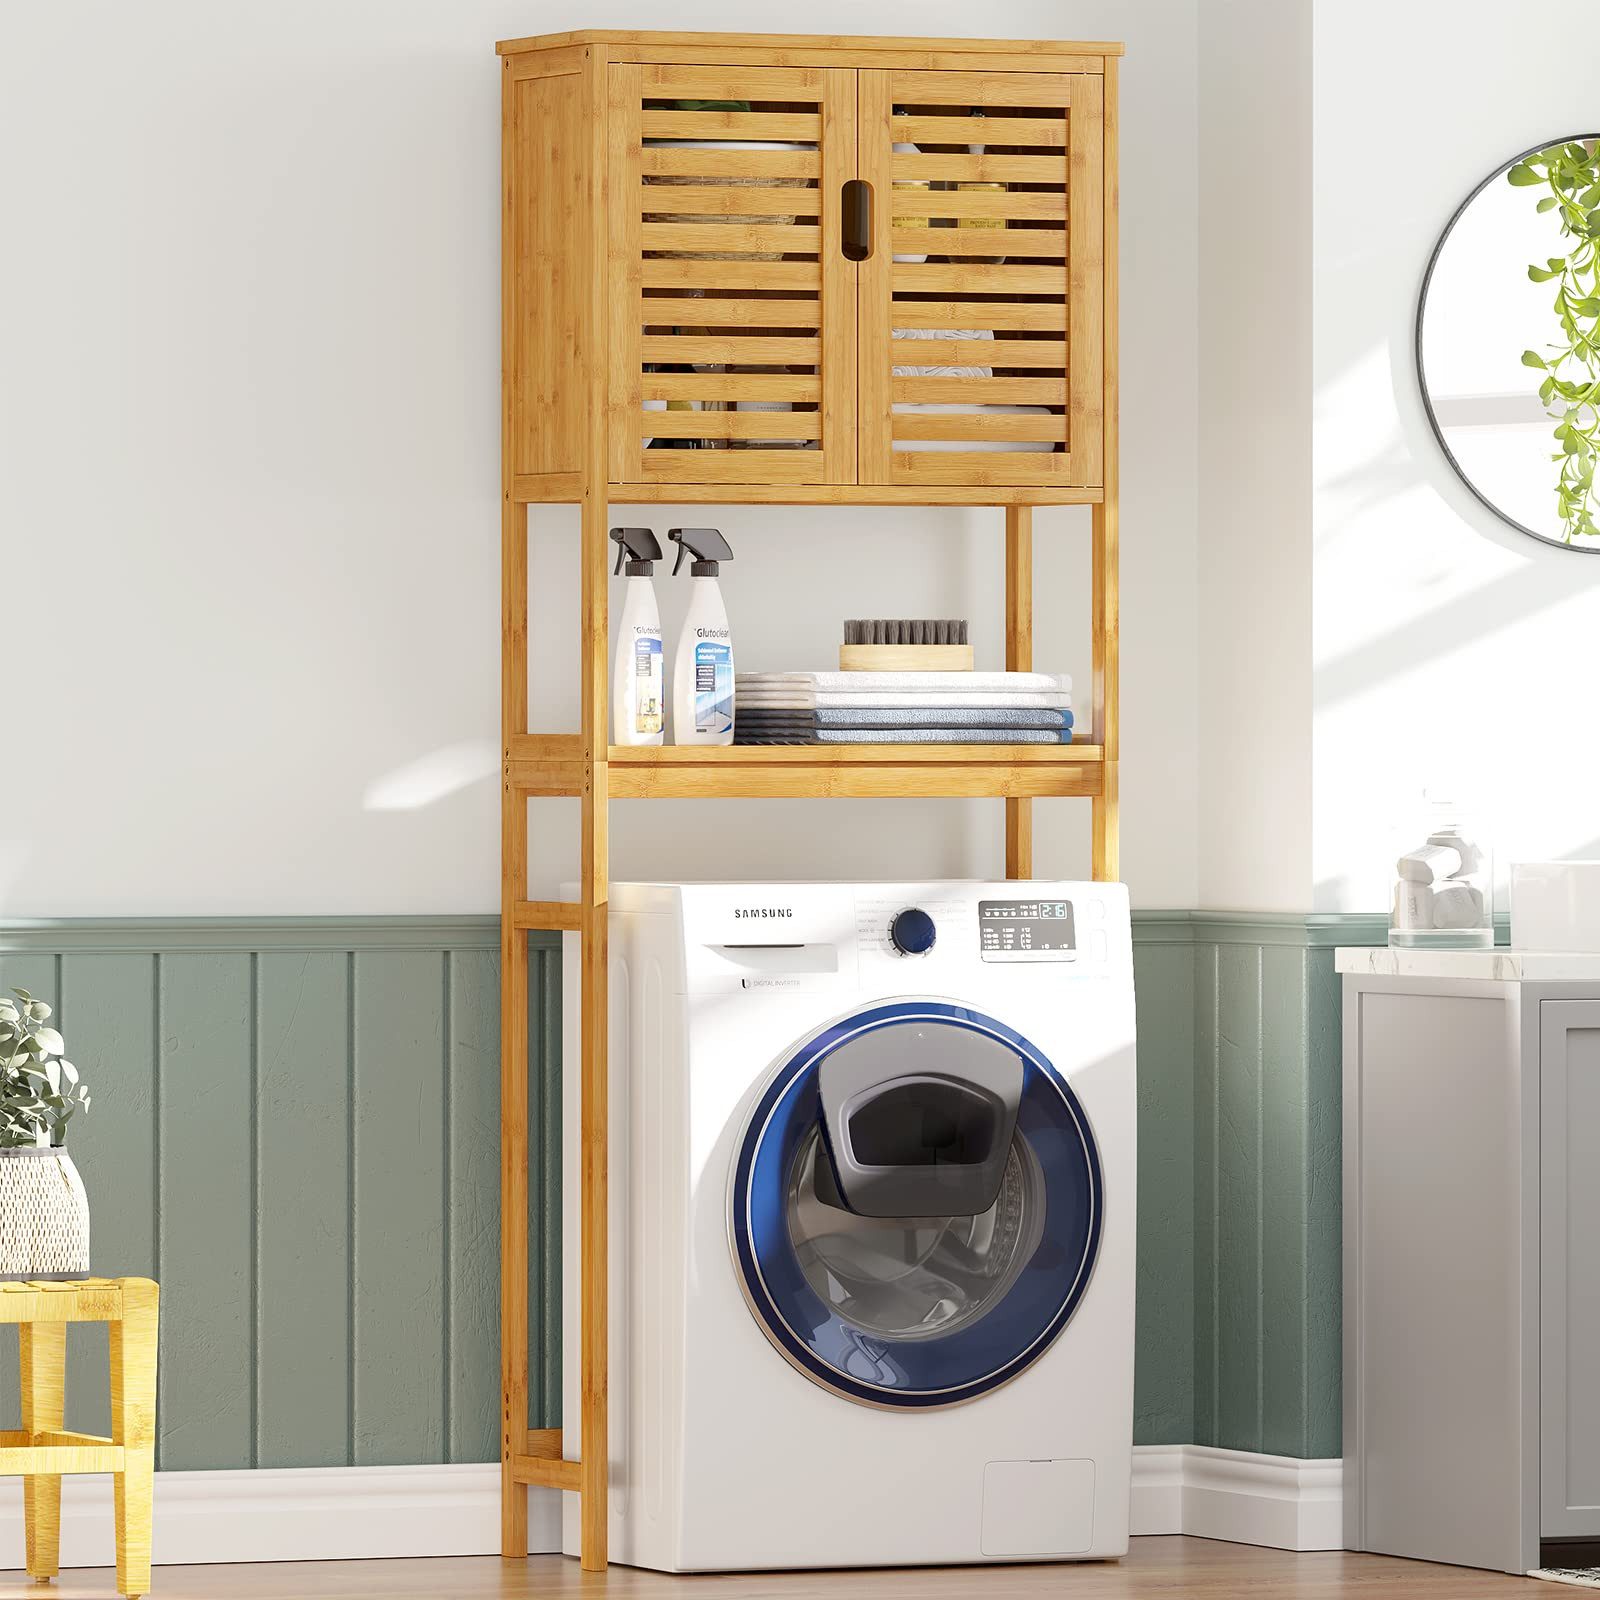 MSMASK Badregal Toilettenregal Bambus mit Schrank,Waschmaschinenschrank, Überbau Badezimmer Regal, Toilettenschrank, 64 x 26 x 168 cm